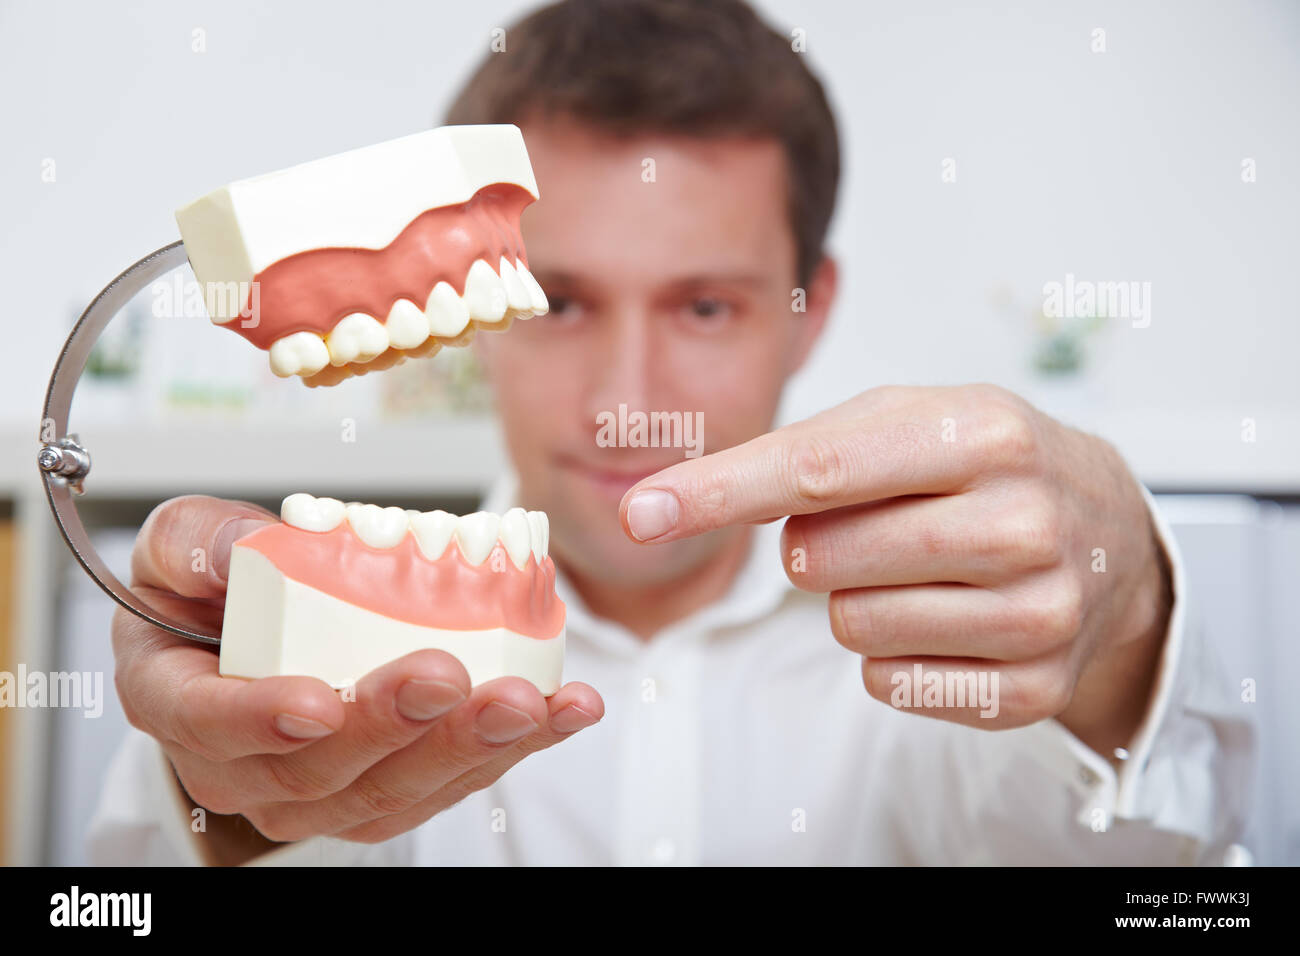 Врач занимающийся протезированием. Ортопедическая стоматология. Стоматолог. Снимки людей с протезами зубов.